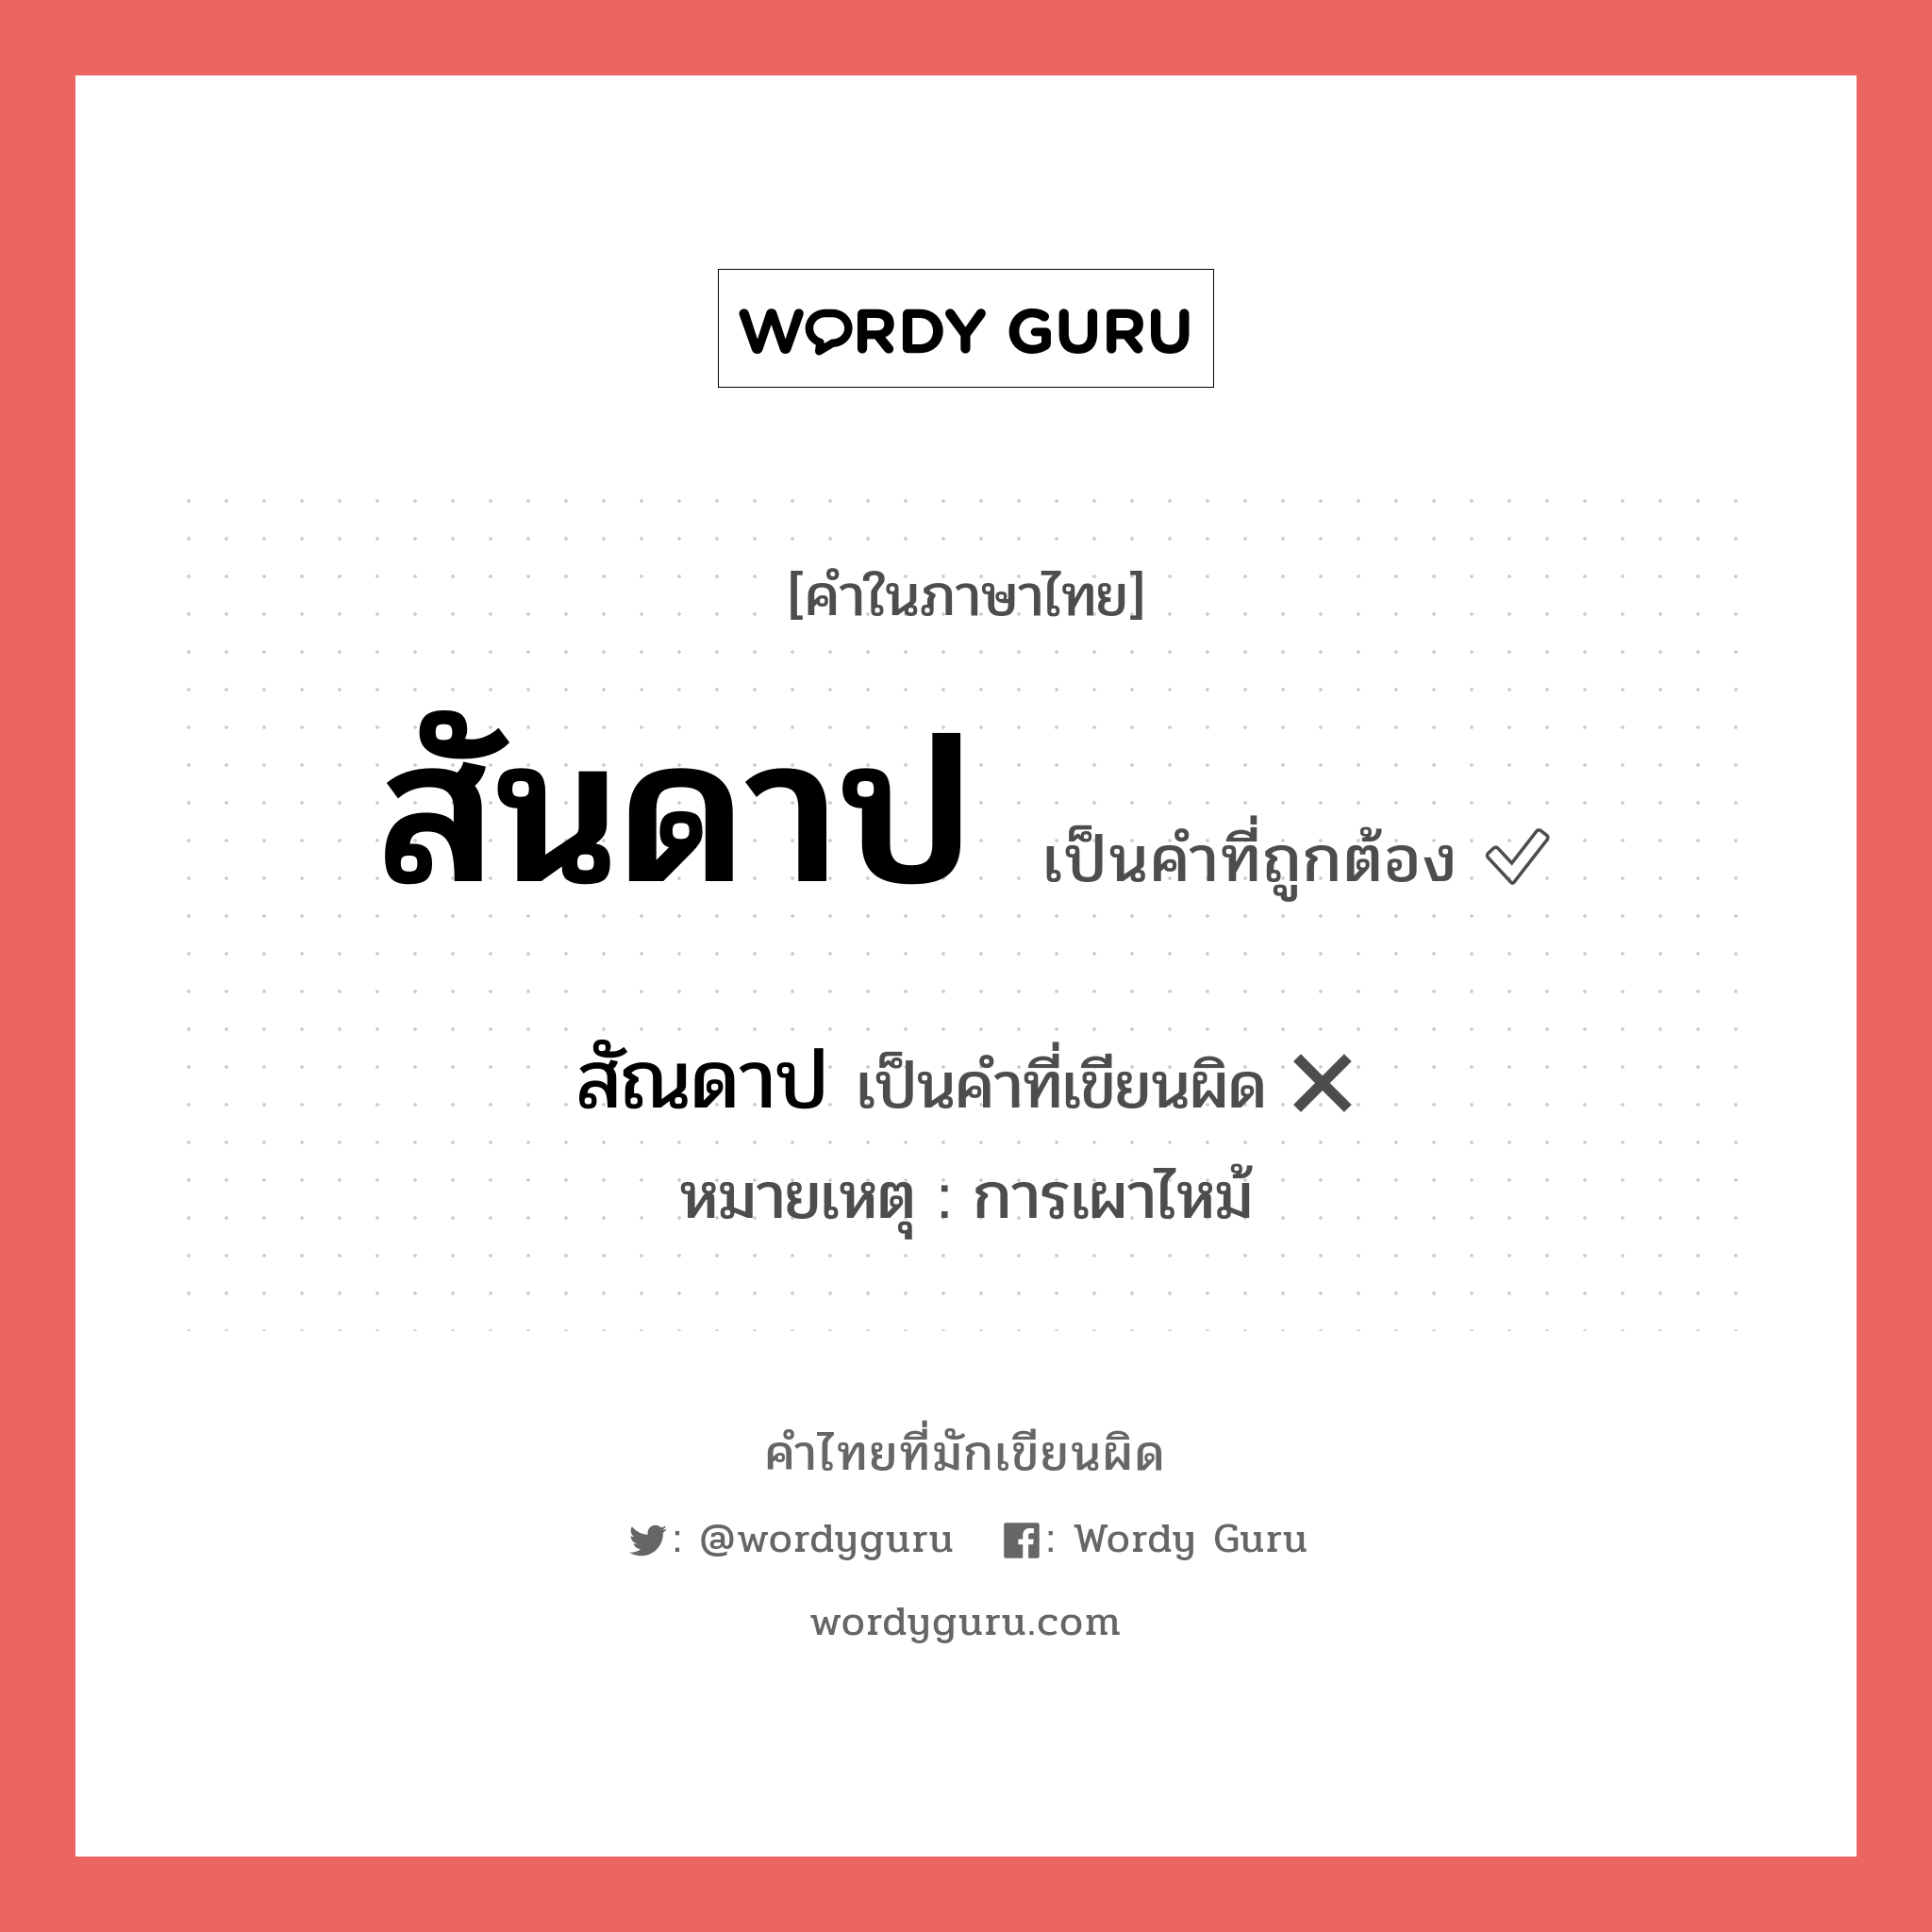 สันดาป หรือ สัณดาป คำไหนเขียนถูก?, คำในภาษาไทยที่มักเขียนผิด สันดาป คำที่ผิด ❌ สัณดาป หมายเหตุ การเผาไหม้